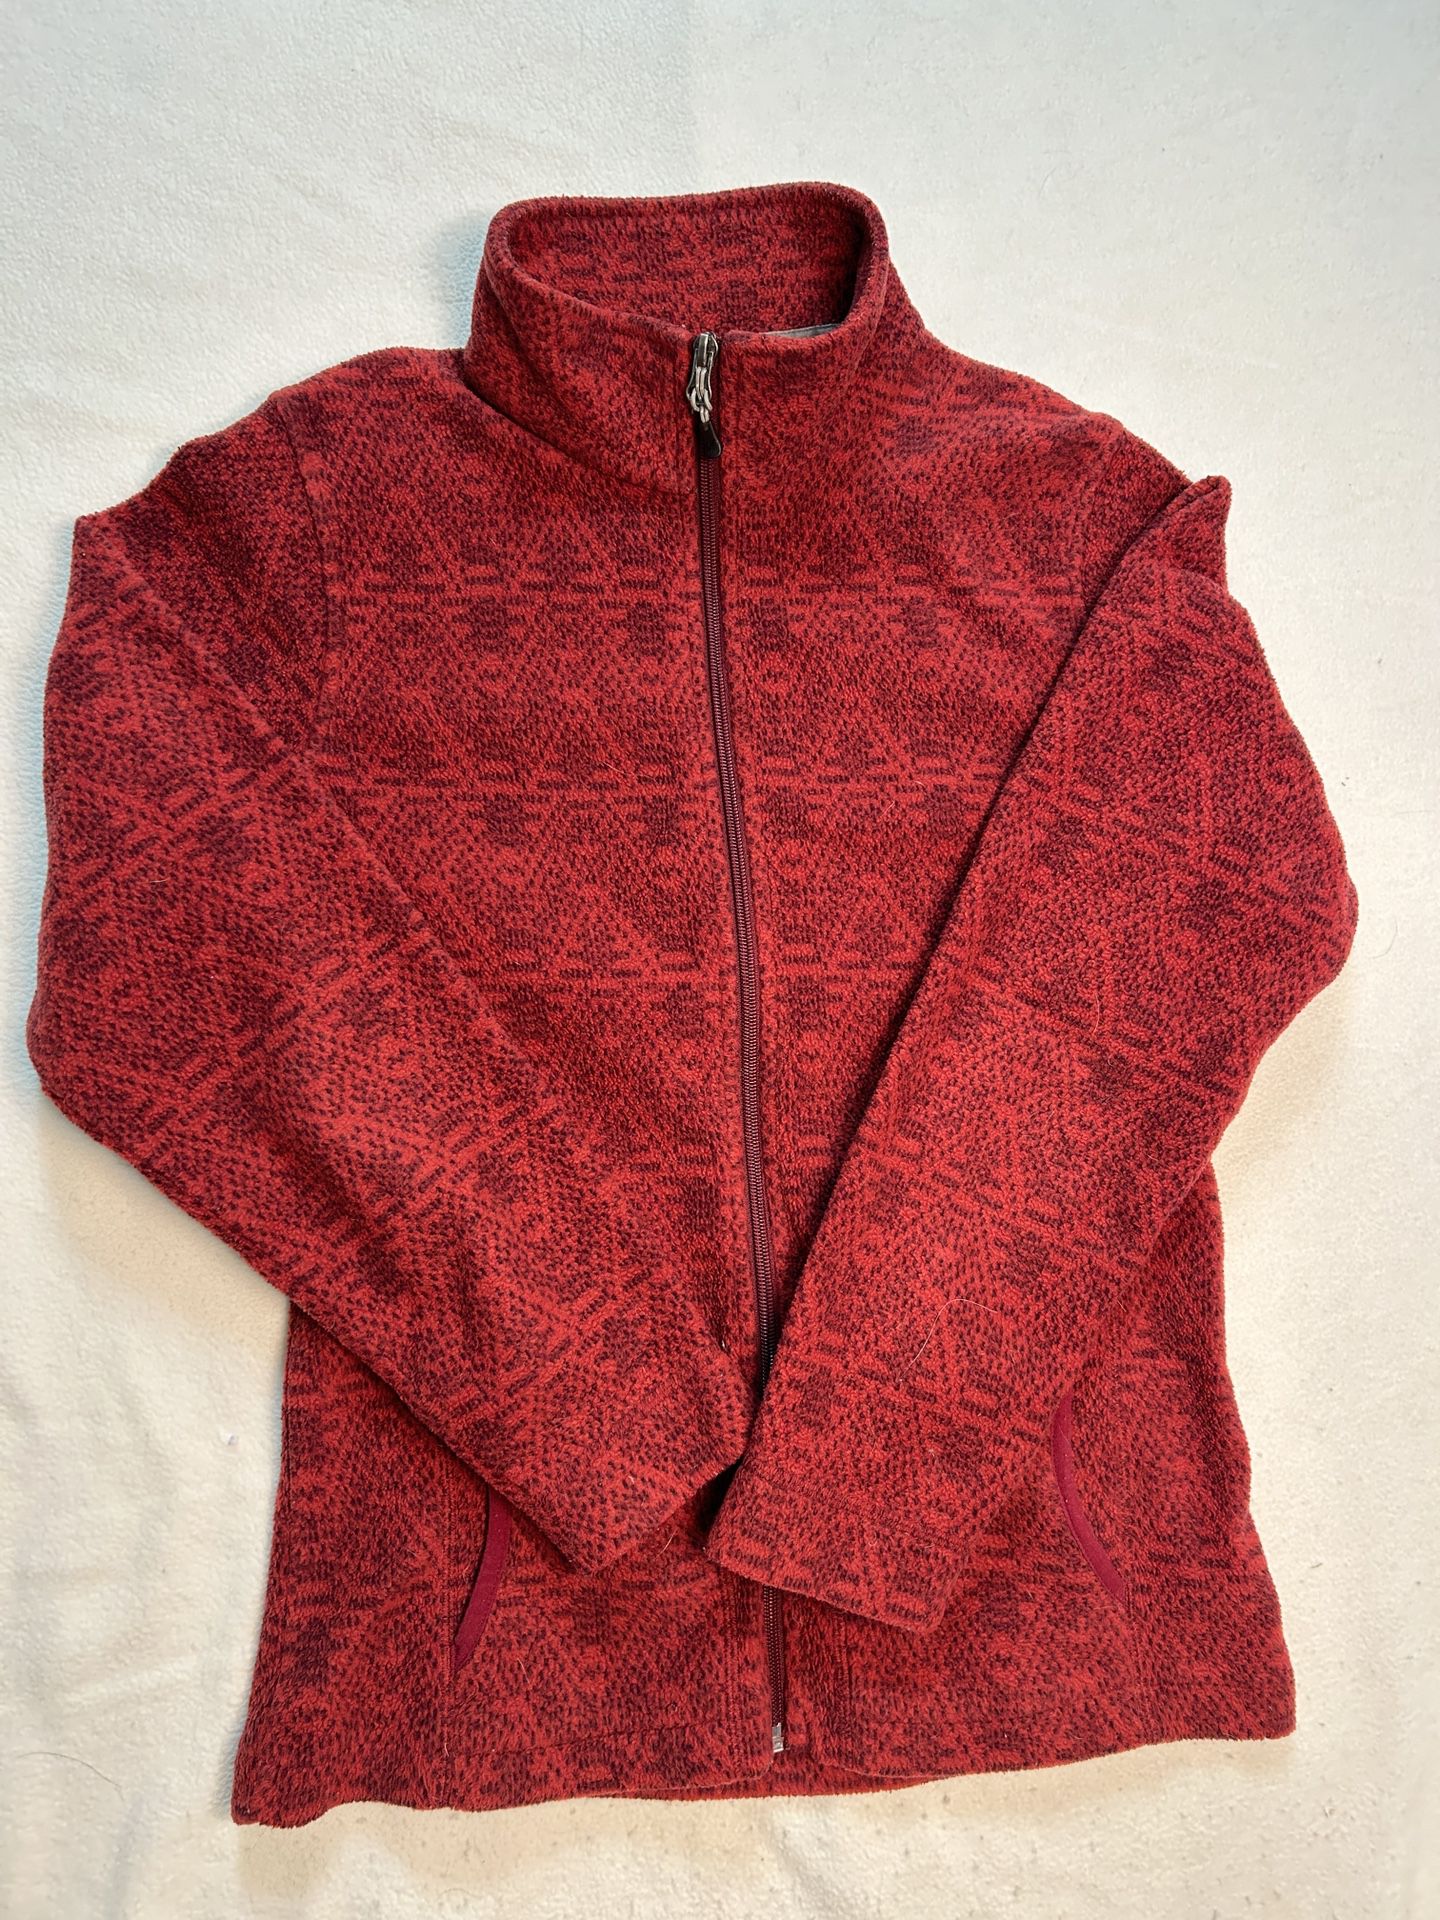 Woolrich Women's Full Zip Fleece Red Geometric Jacket Size XS